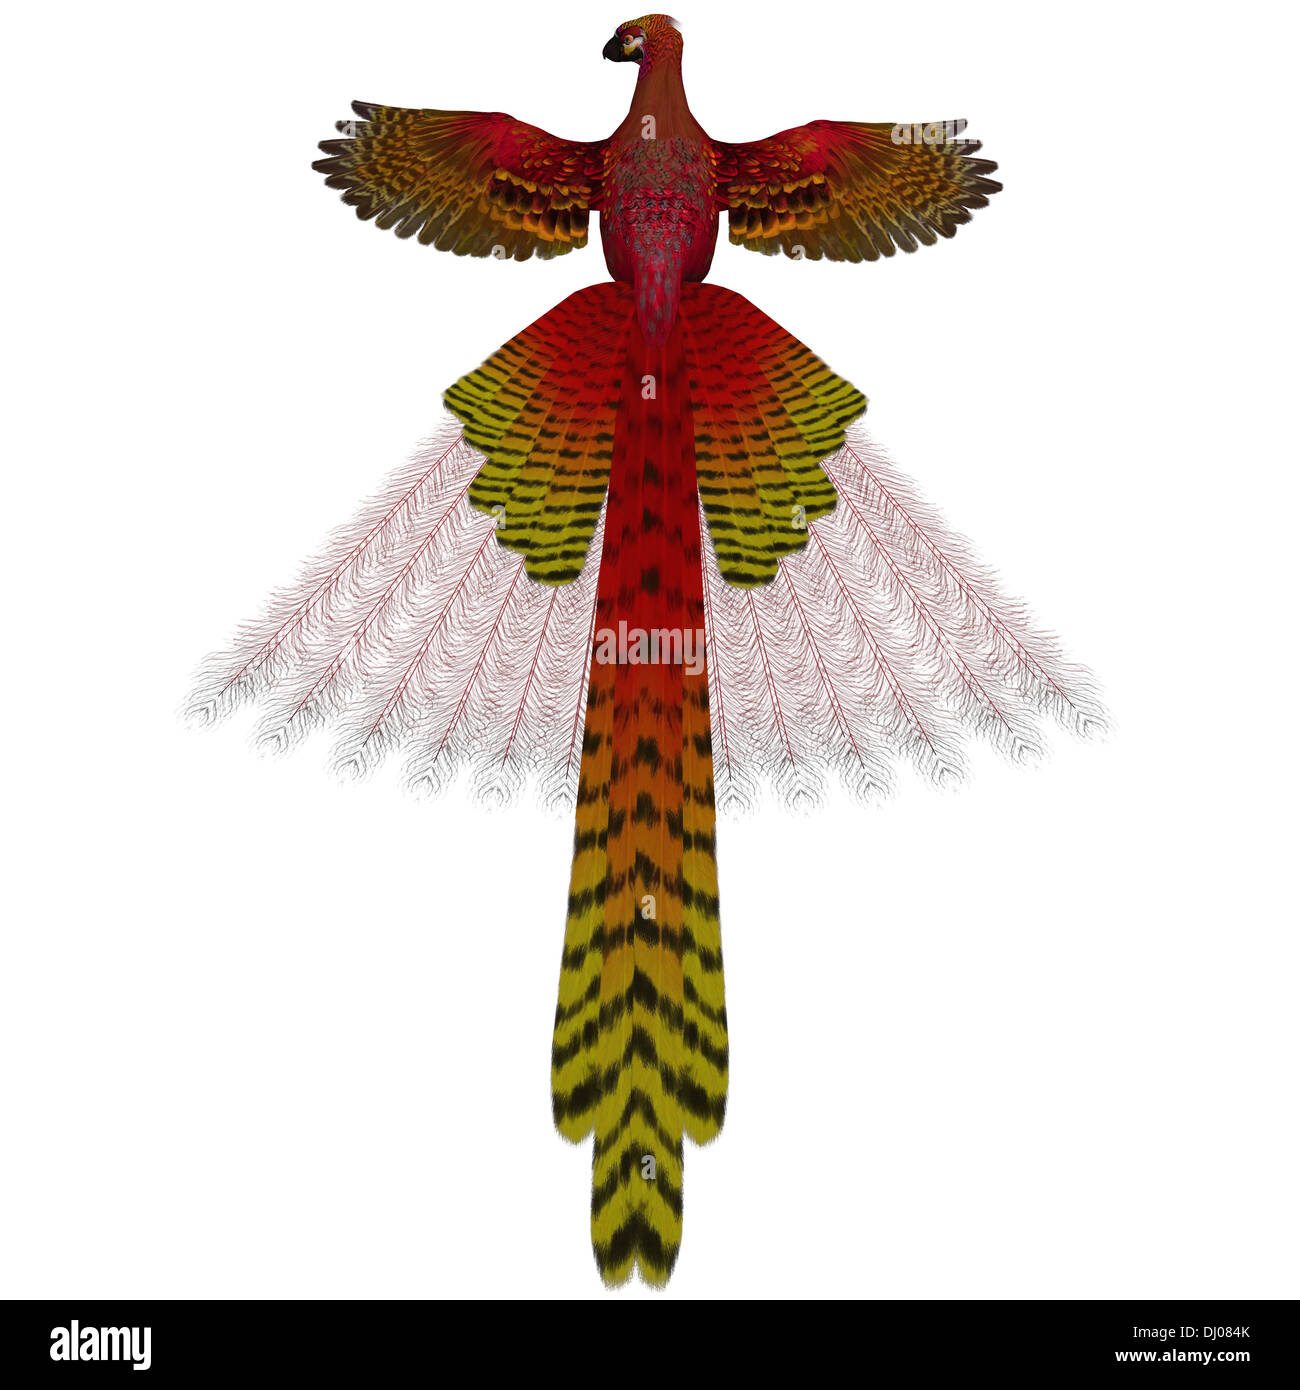 El Phoenix firebird es un símbolo mítico de la regeneración o renovación de la vida. Foto de stock